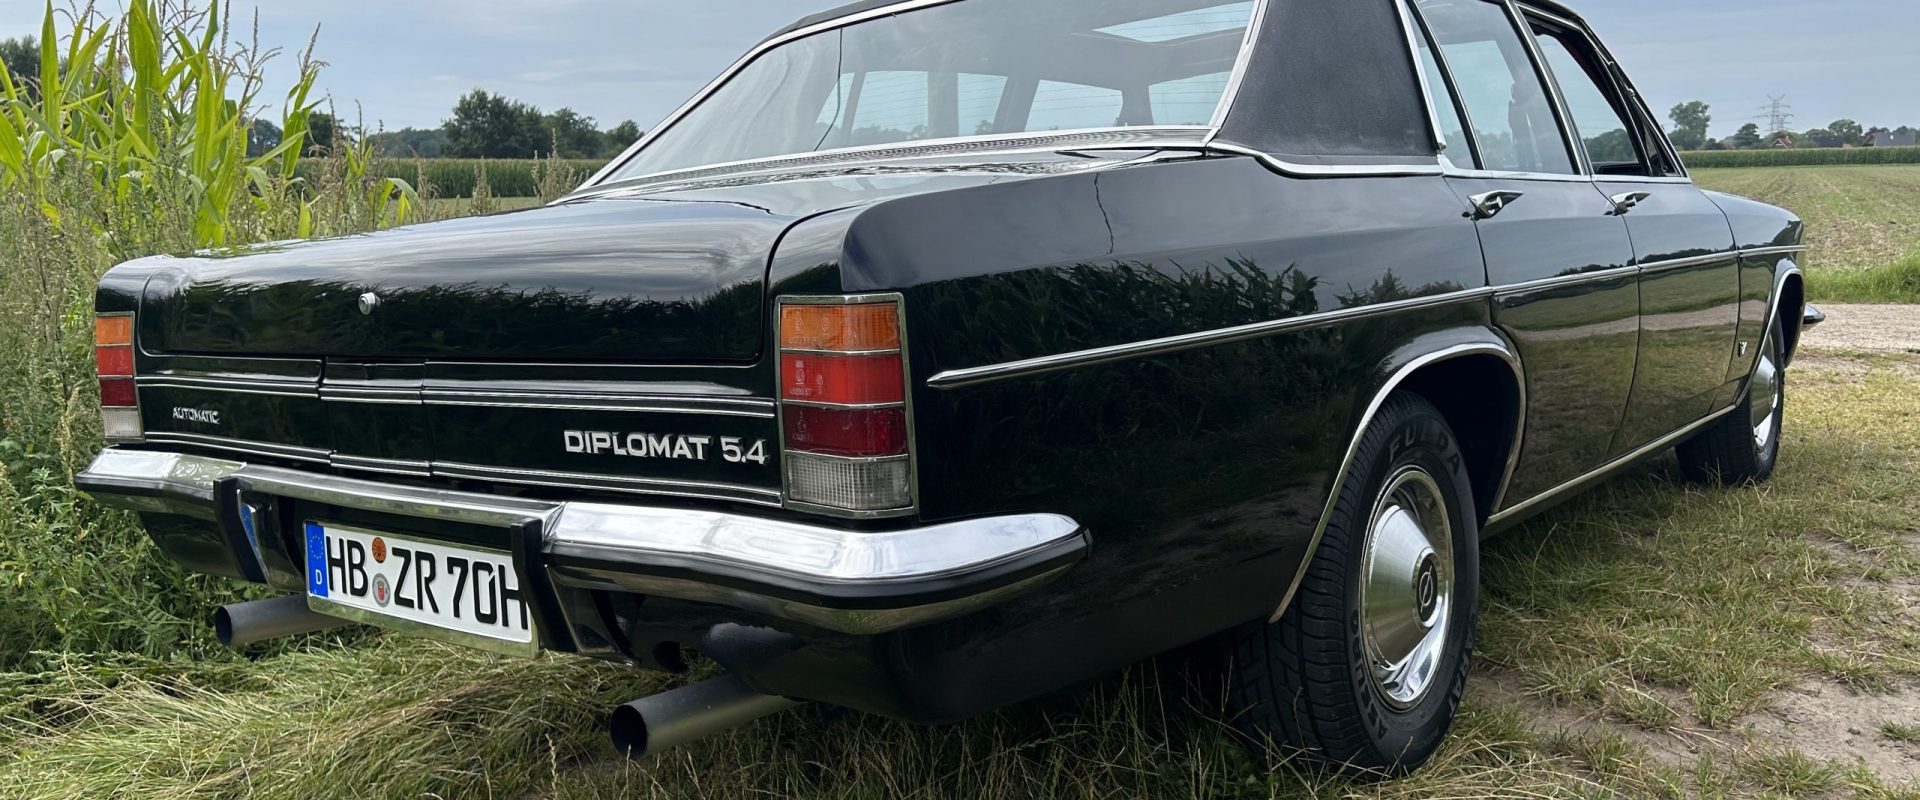 Opel Diplomat B V8 Zeitreise Oldtimervermietung